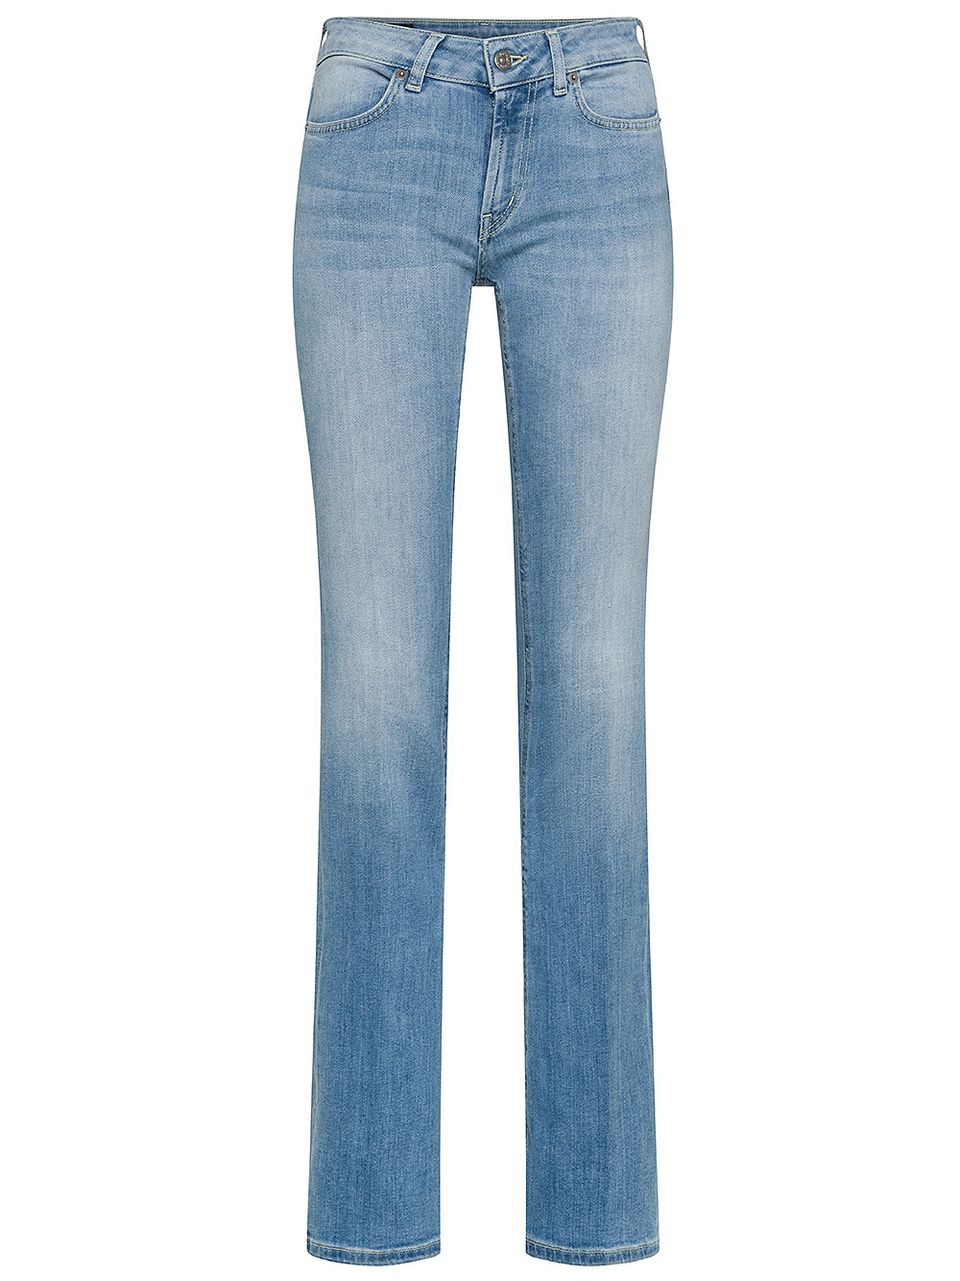 Jeans Lola in misto cotone skinny